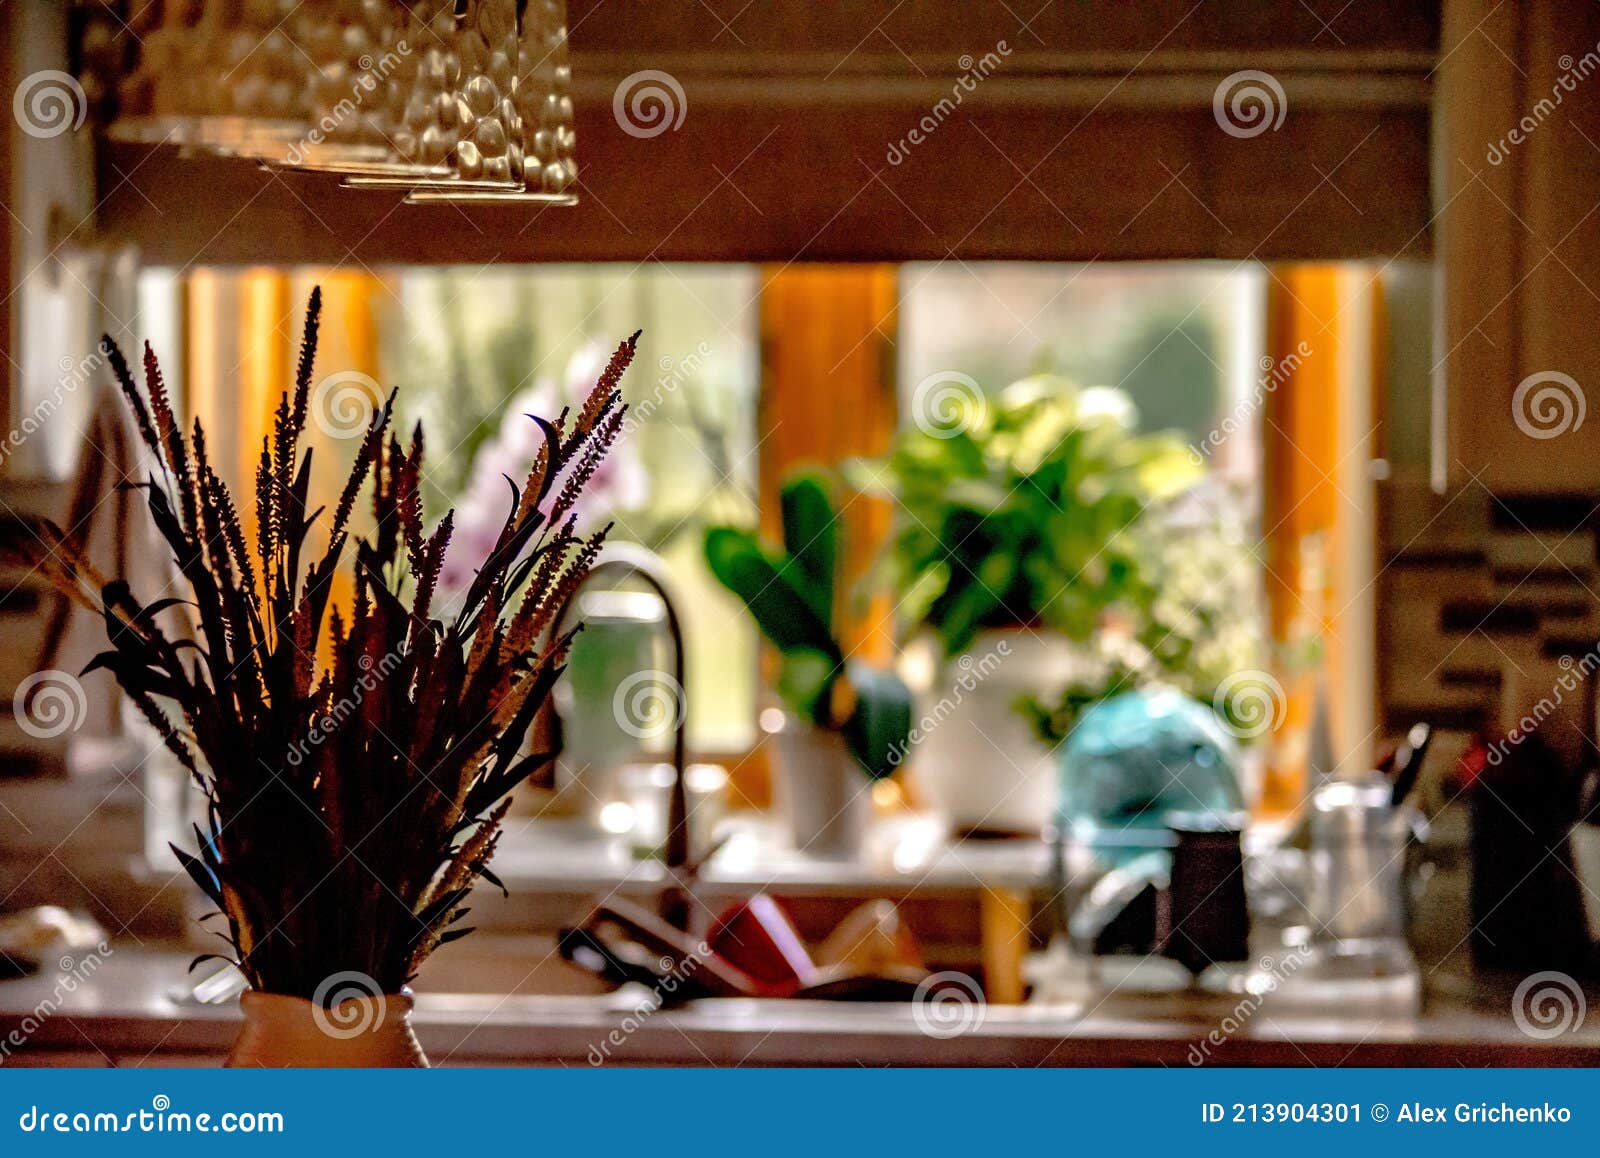 domestic kitchen decorations in private home